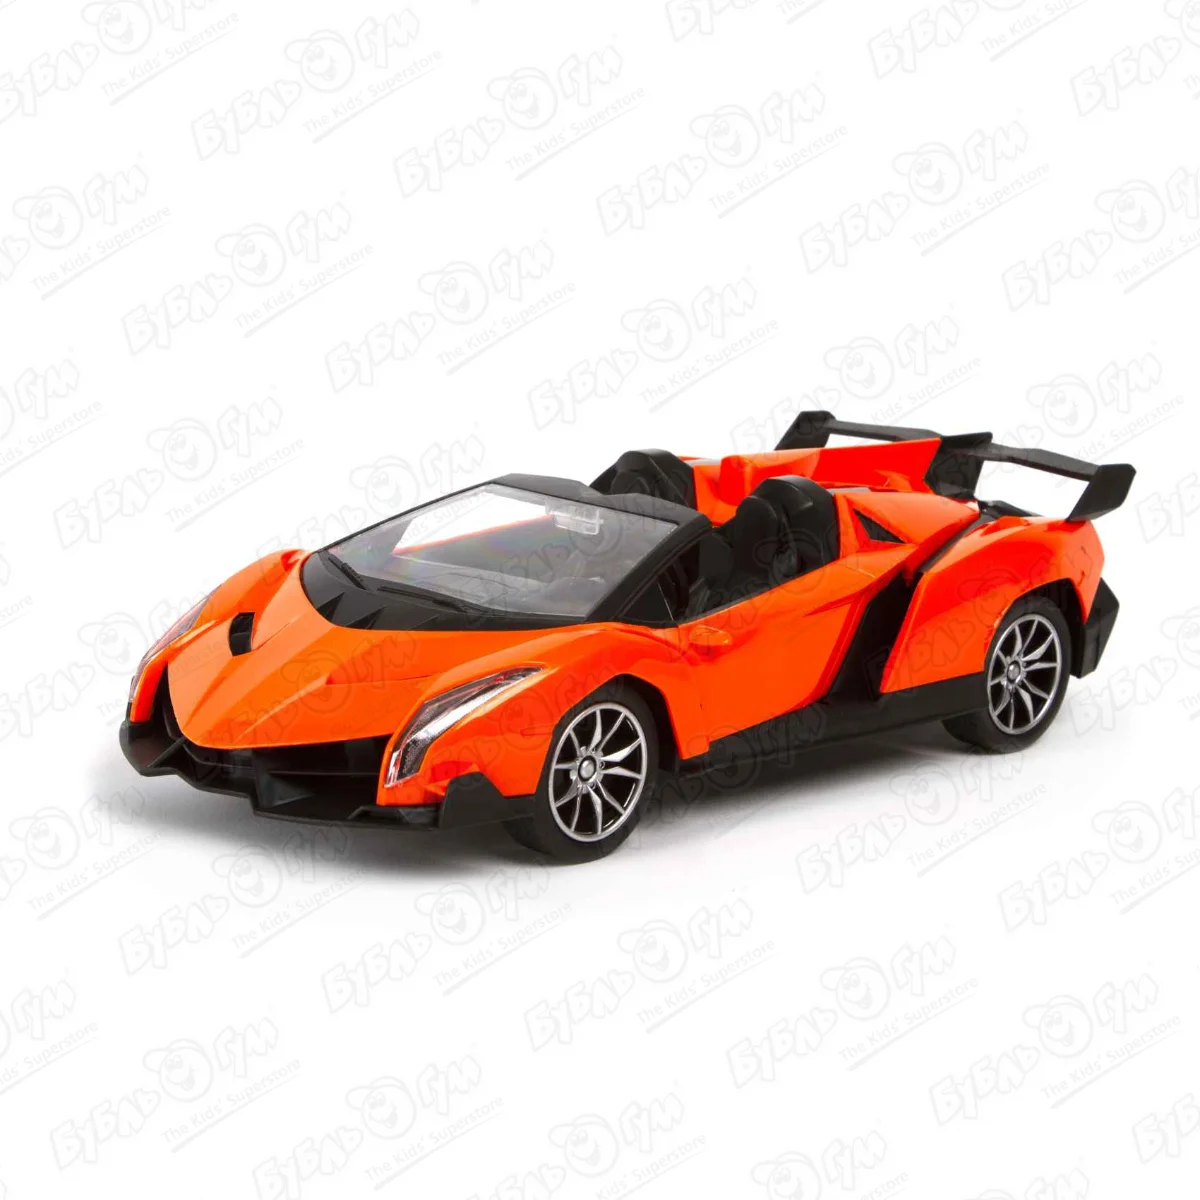 Автомобиль гоночный Lanson Toys р/у с педалями и рулем оранжевый 1:16